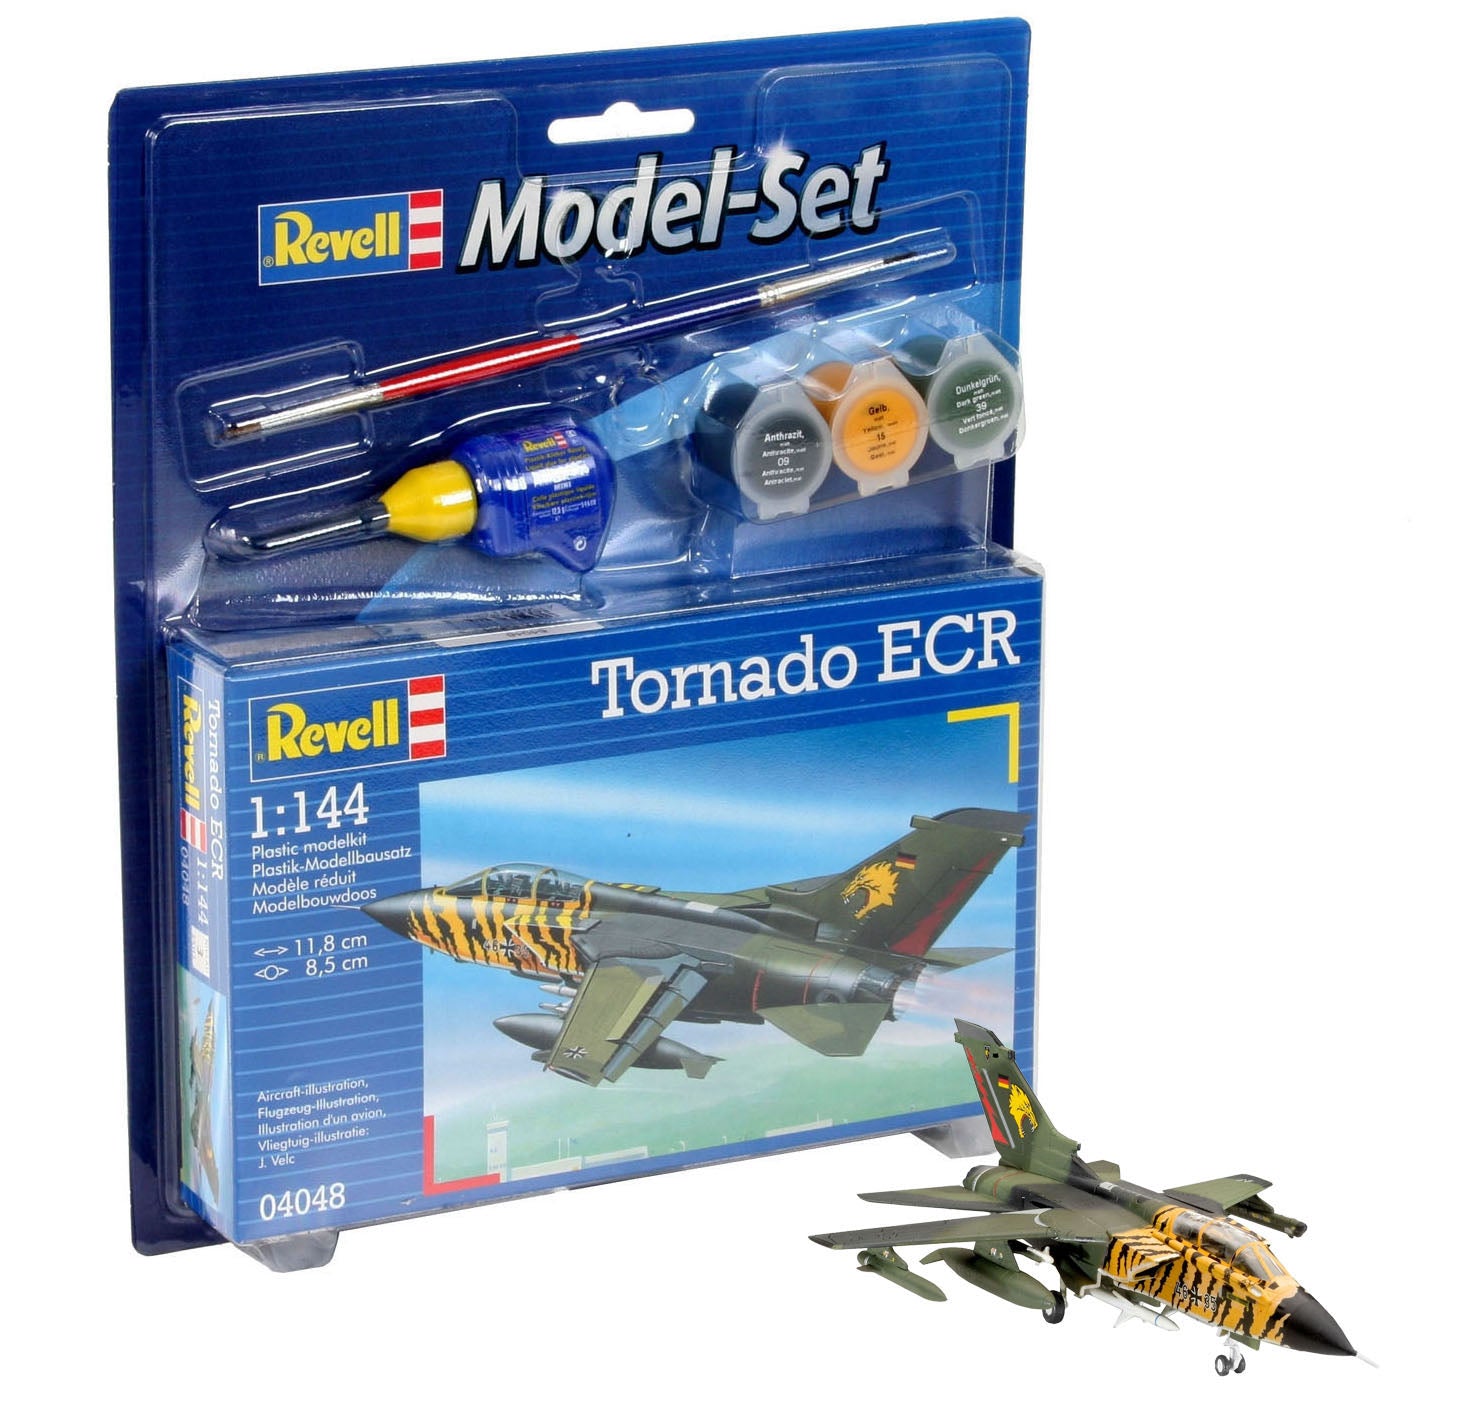 Tornado ECR 1:144 Scale Kit